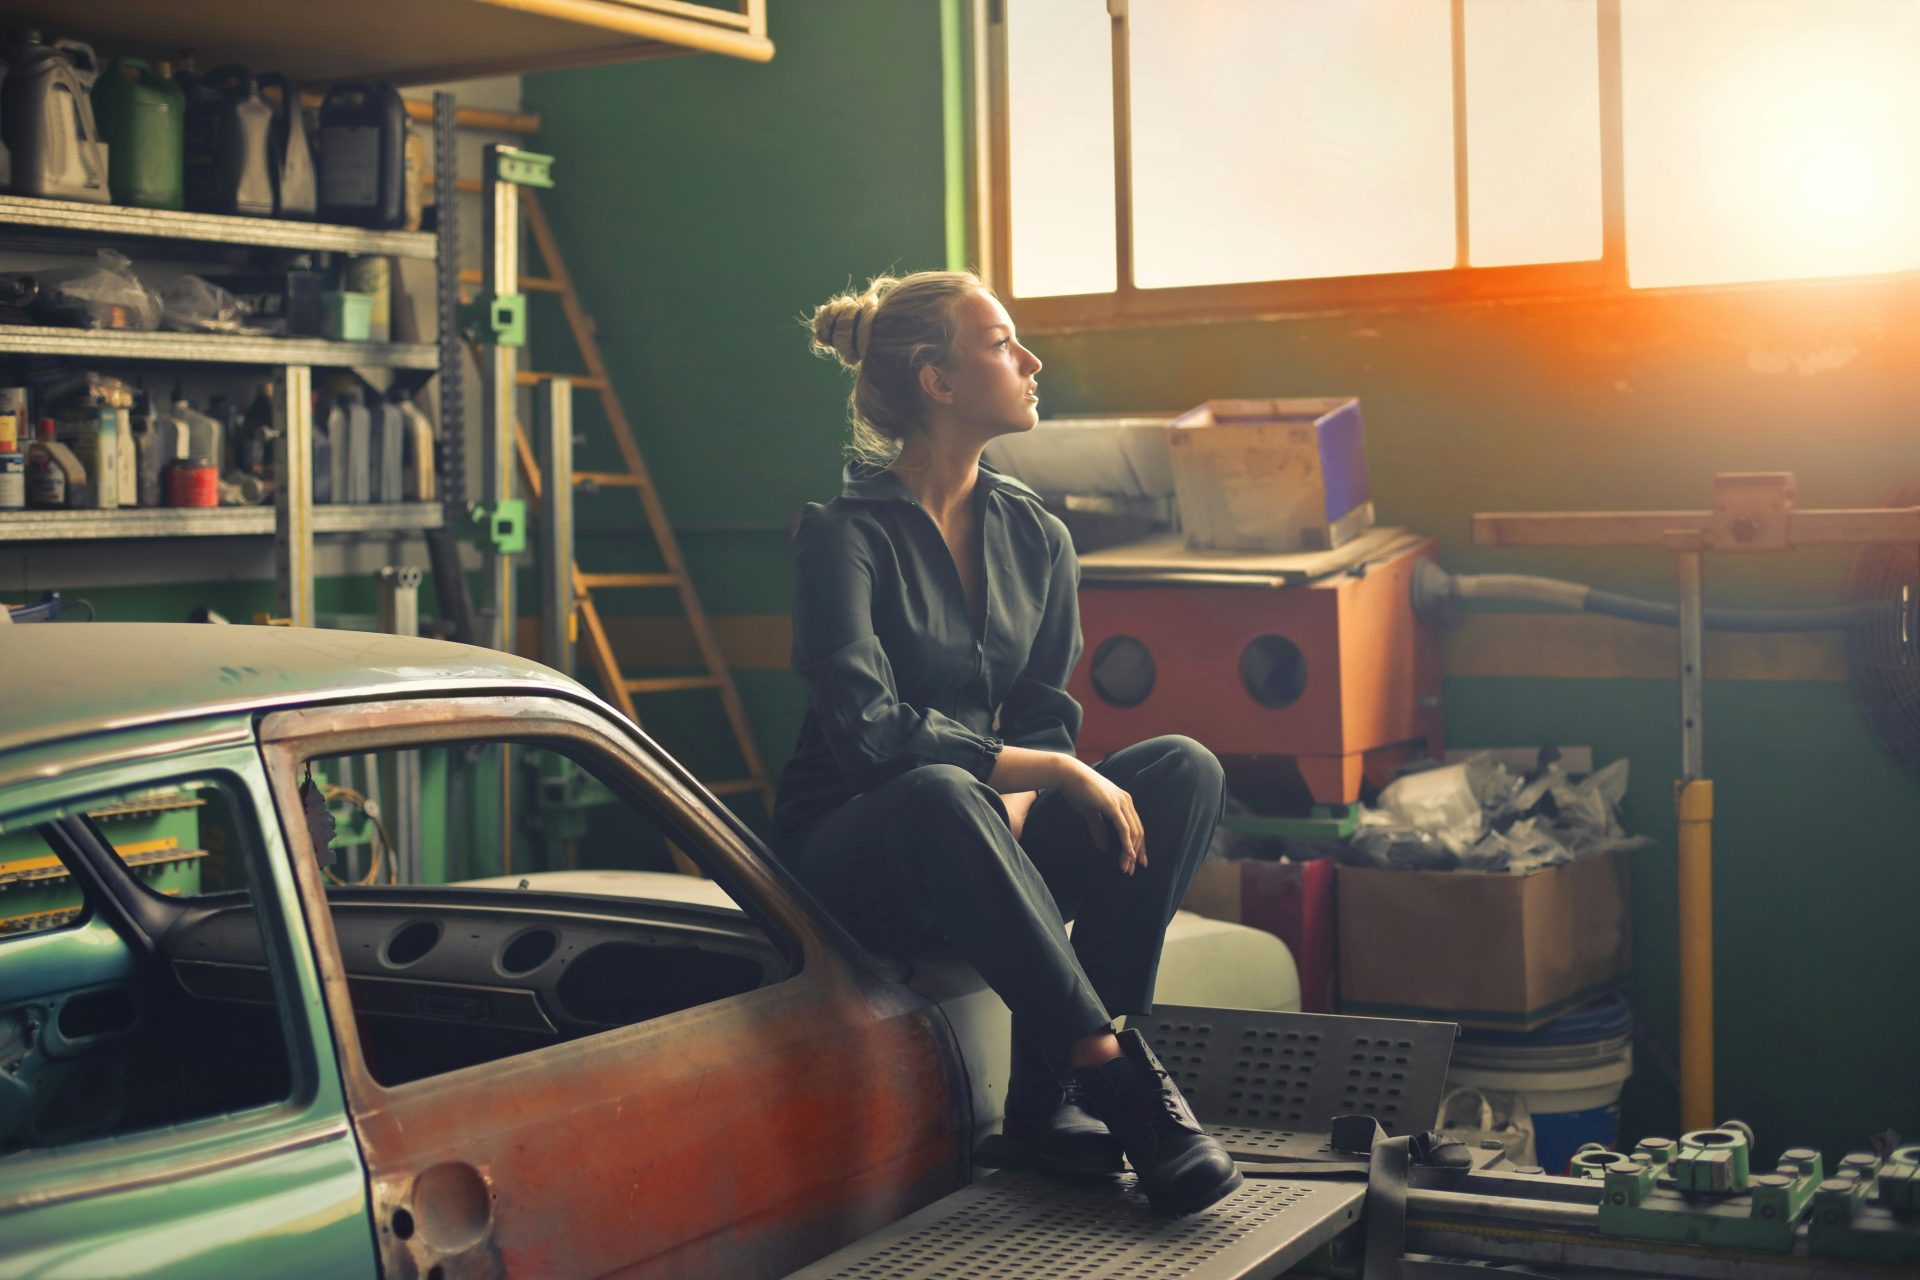 Woman sitting on car in garage